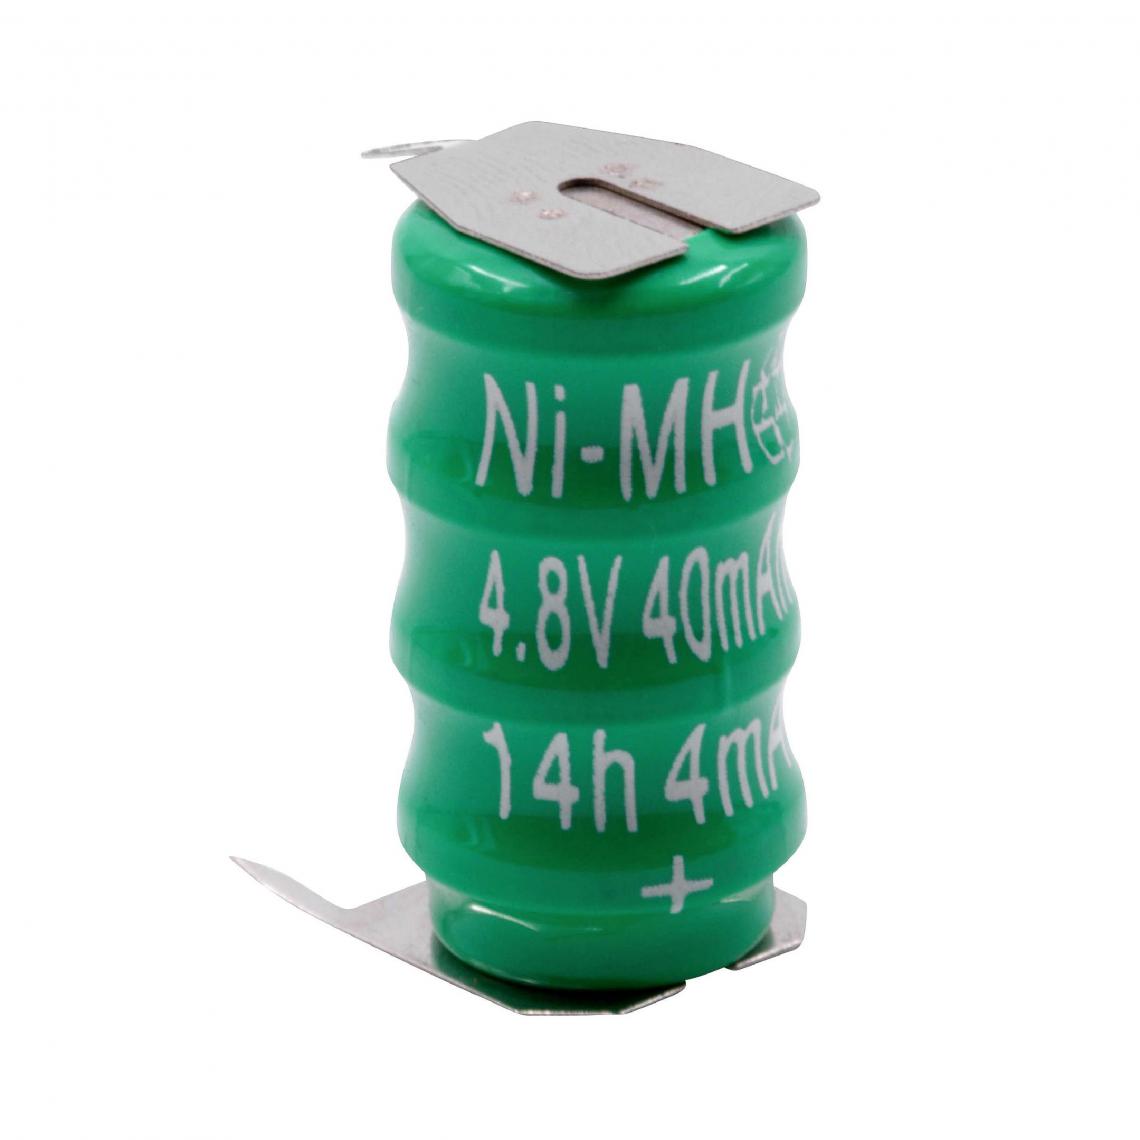 Vhbw - vhbw NiMH pile bouton de remplacement pour type V40H 3 épingles 40mAh 4,8V convient pour les batteries de modélisme - Autre appareil de mesure